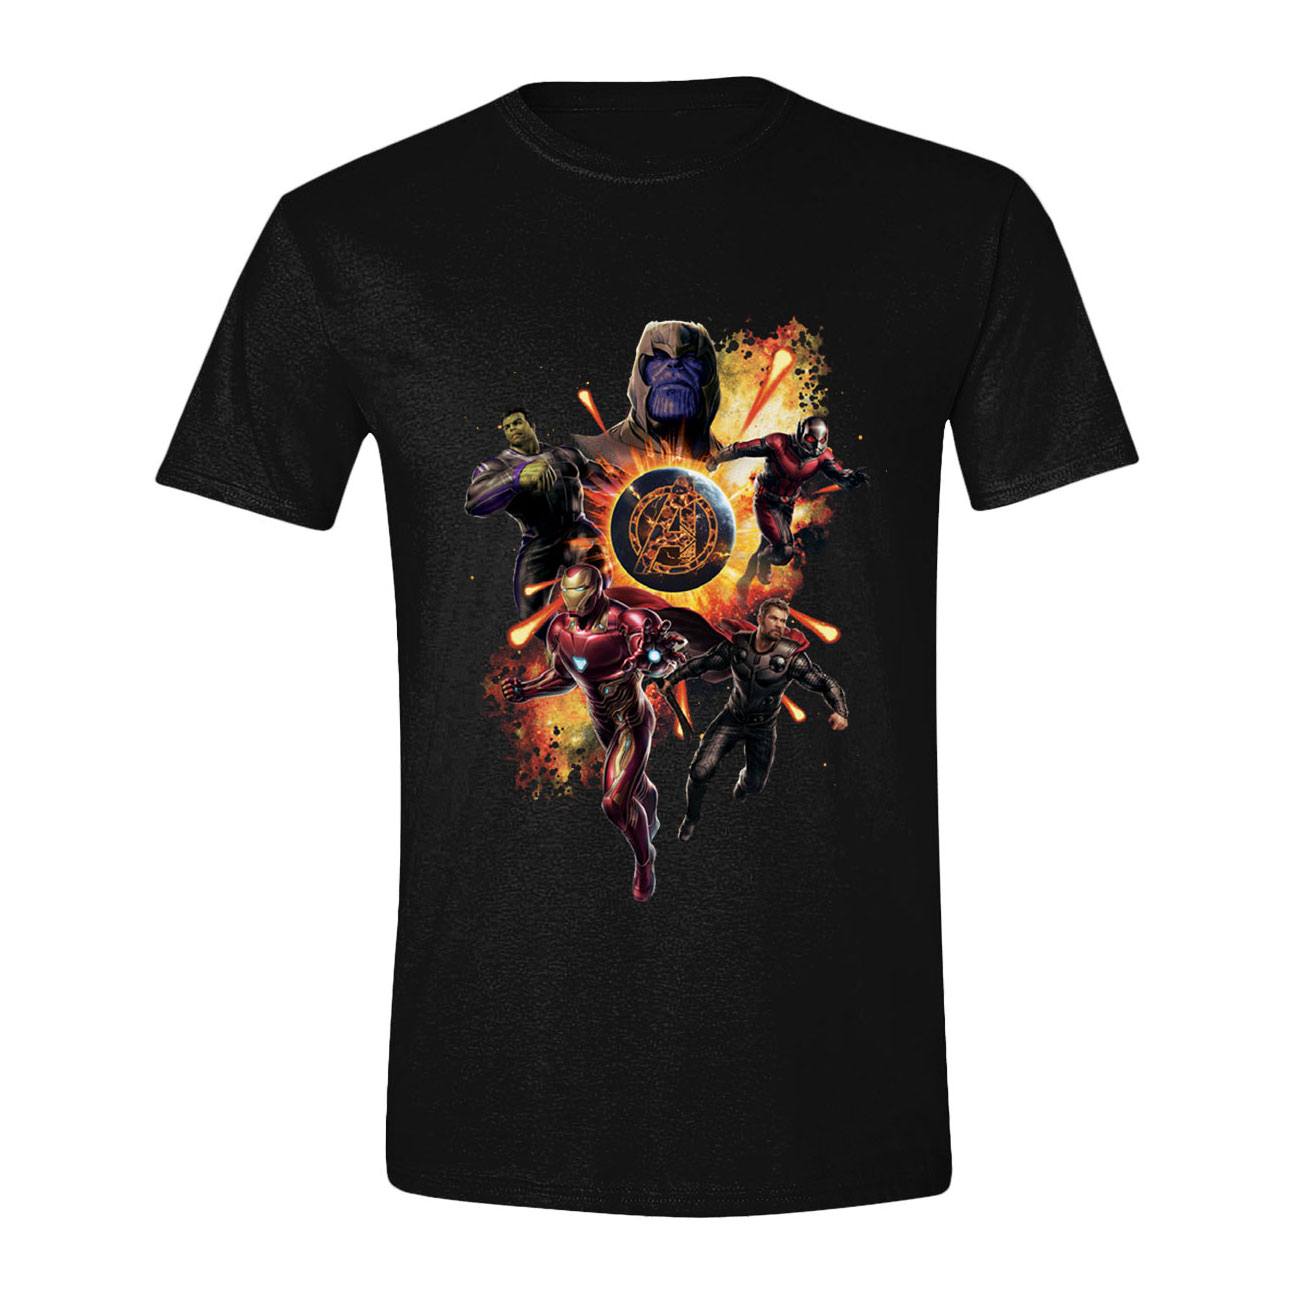 Avengers : Endgame T-Shirt Thanos & Avengers (S)